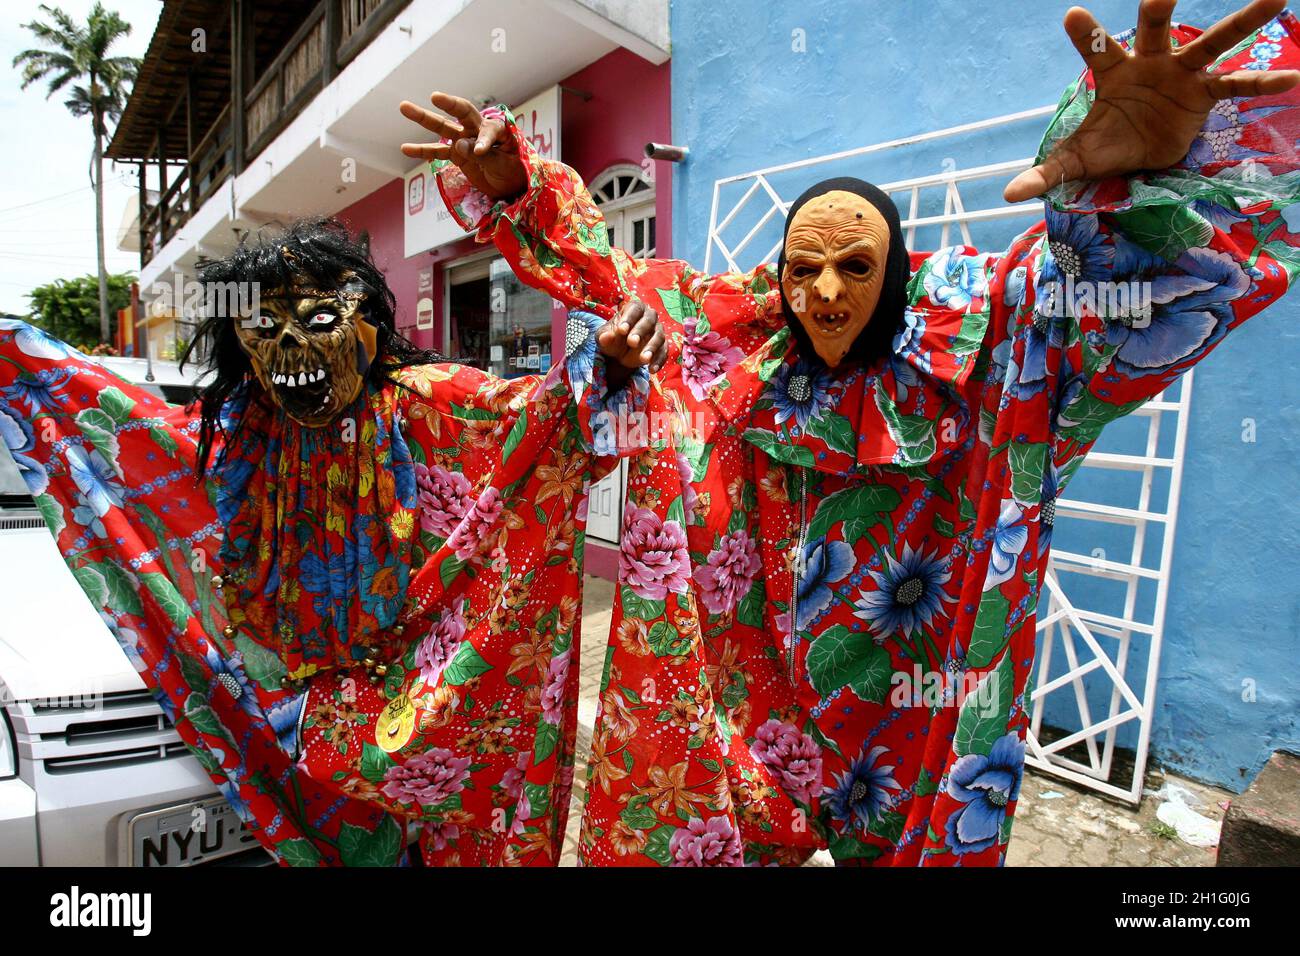 itacare, bahia / brasilien - 20. februar 2012: Maskierte Männer werden während des Karnevals in der Stadt Itacare im Süden Bahia auf der Straße gesehen. *** Loc Stockfoto